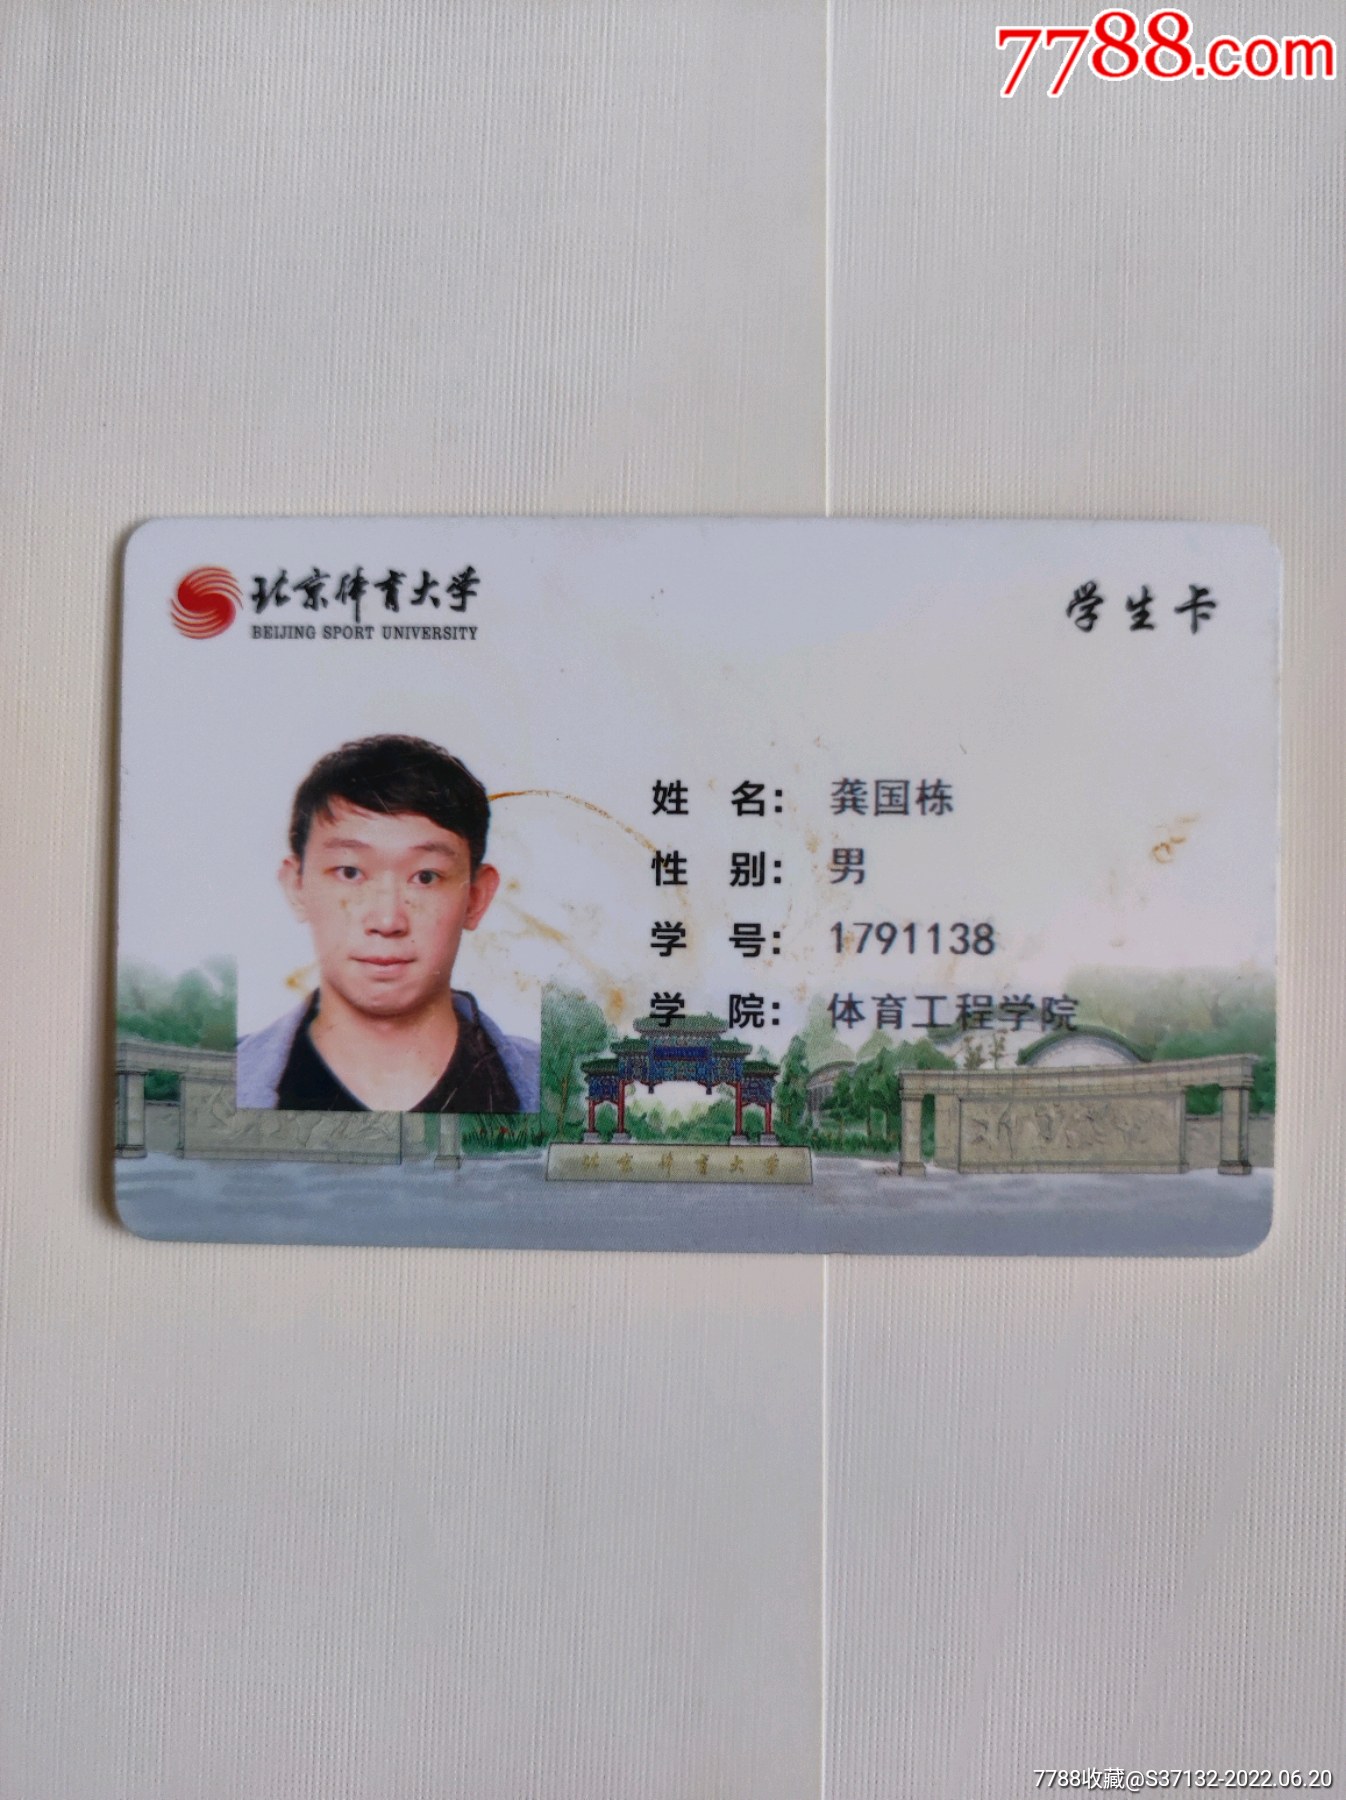 北京体育大学学生卡